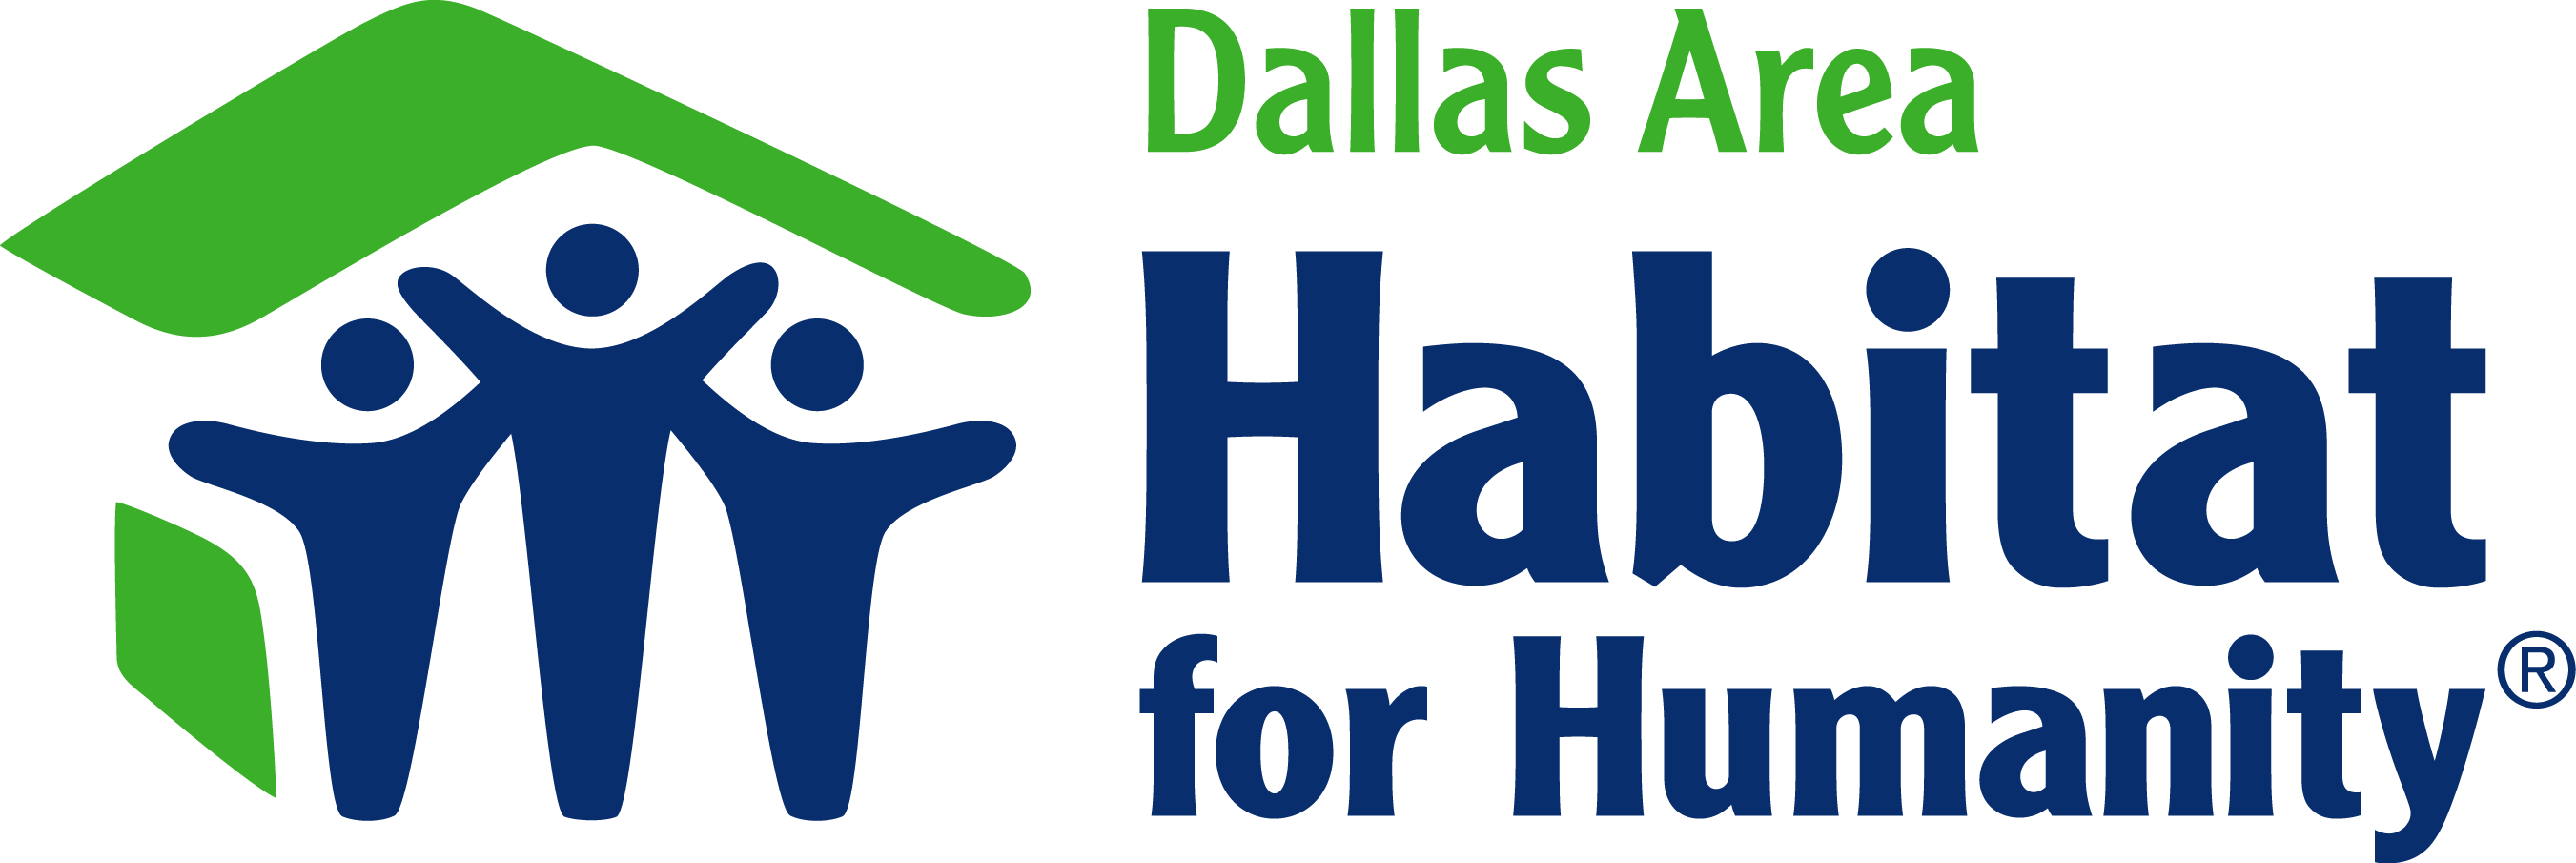 Dallas Area Habitat for Humanity company logo